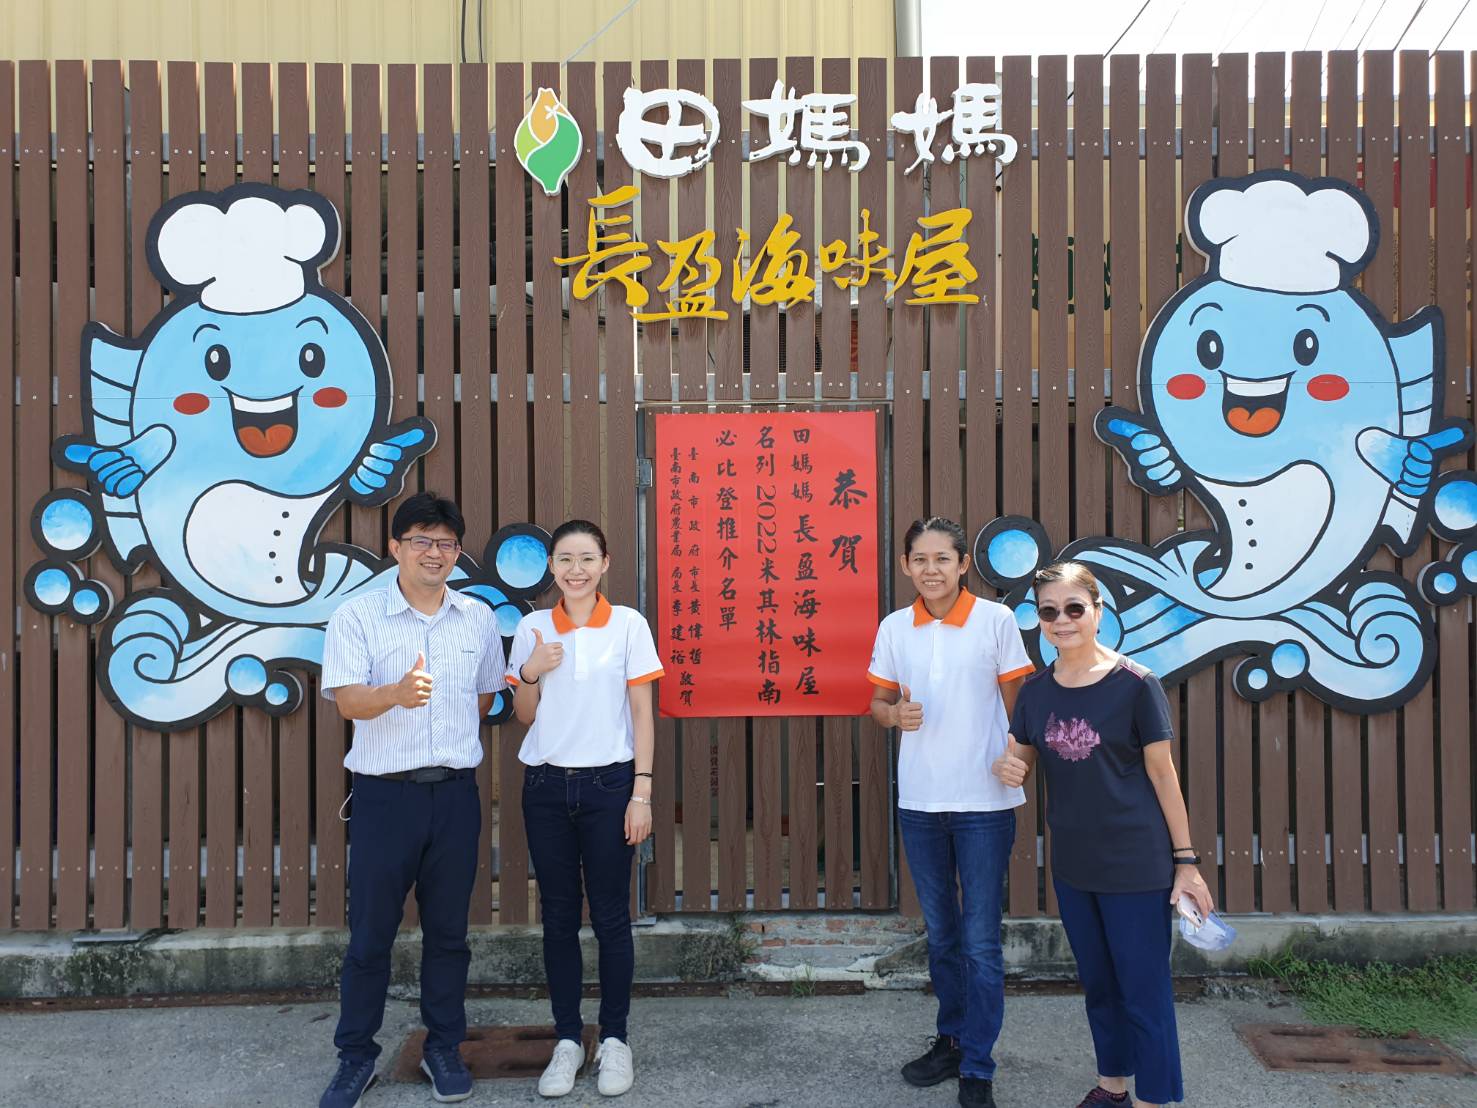 臺南有全國第一家名列必比登推介的田媽媽餐廳-黃偉哲歡迎全國民眾來體驗漁村風光兼享新鮮漁產